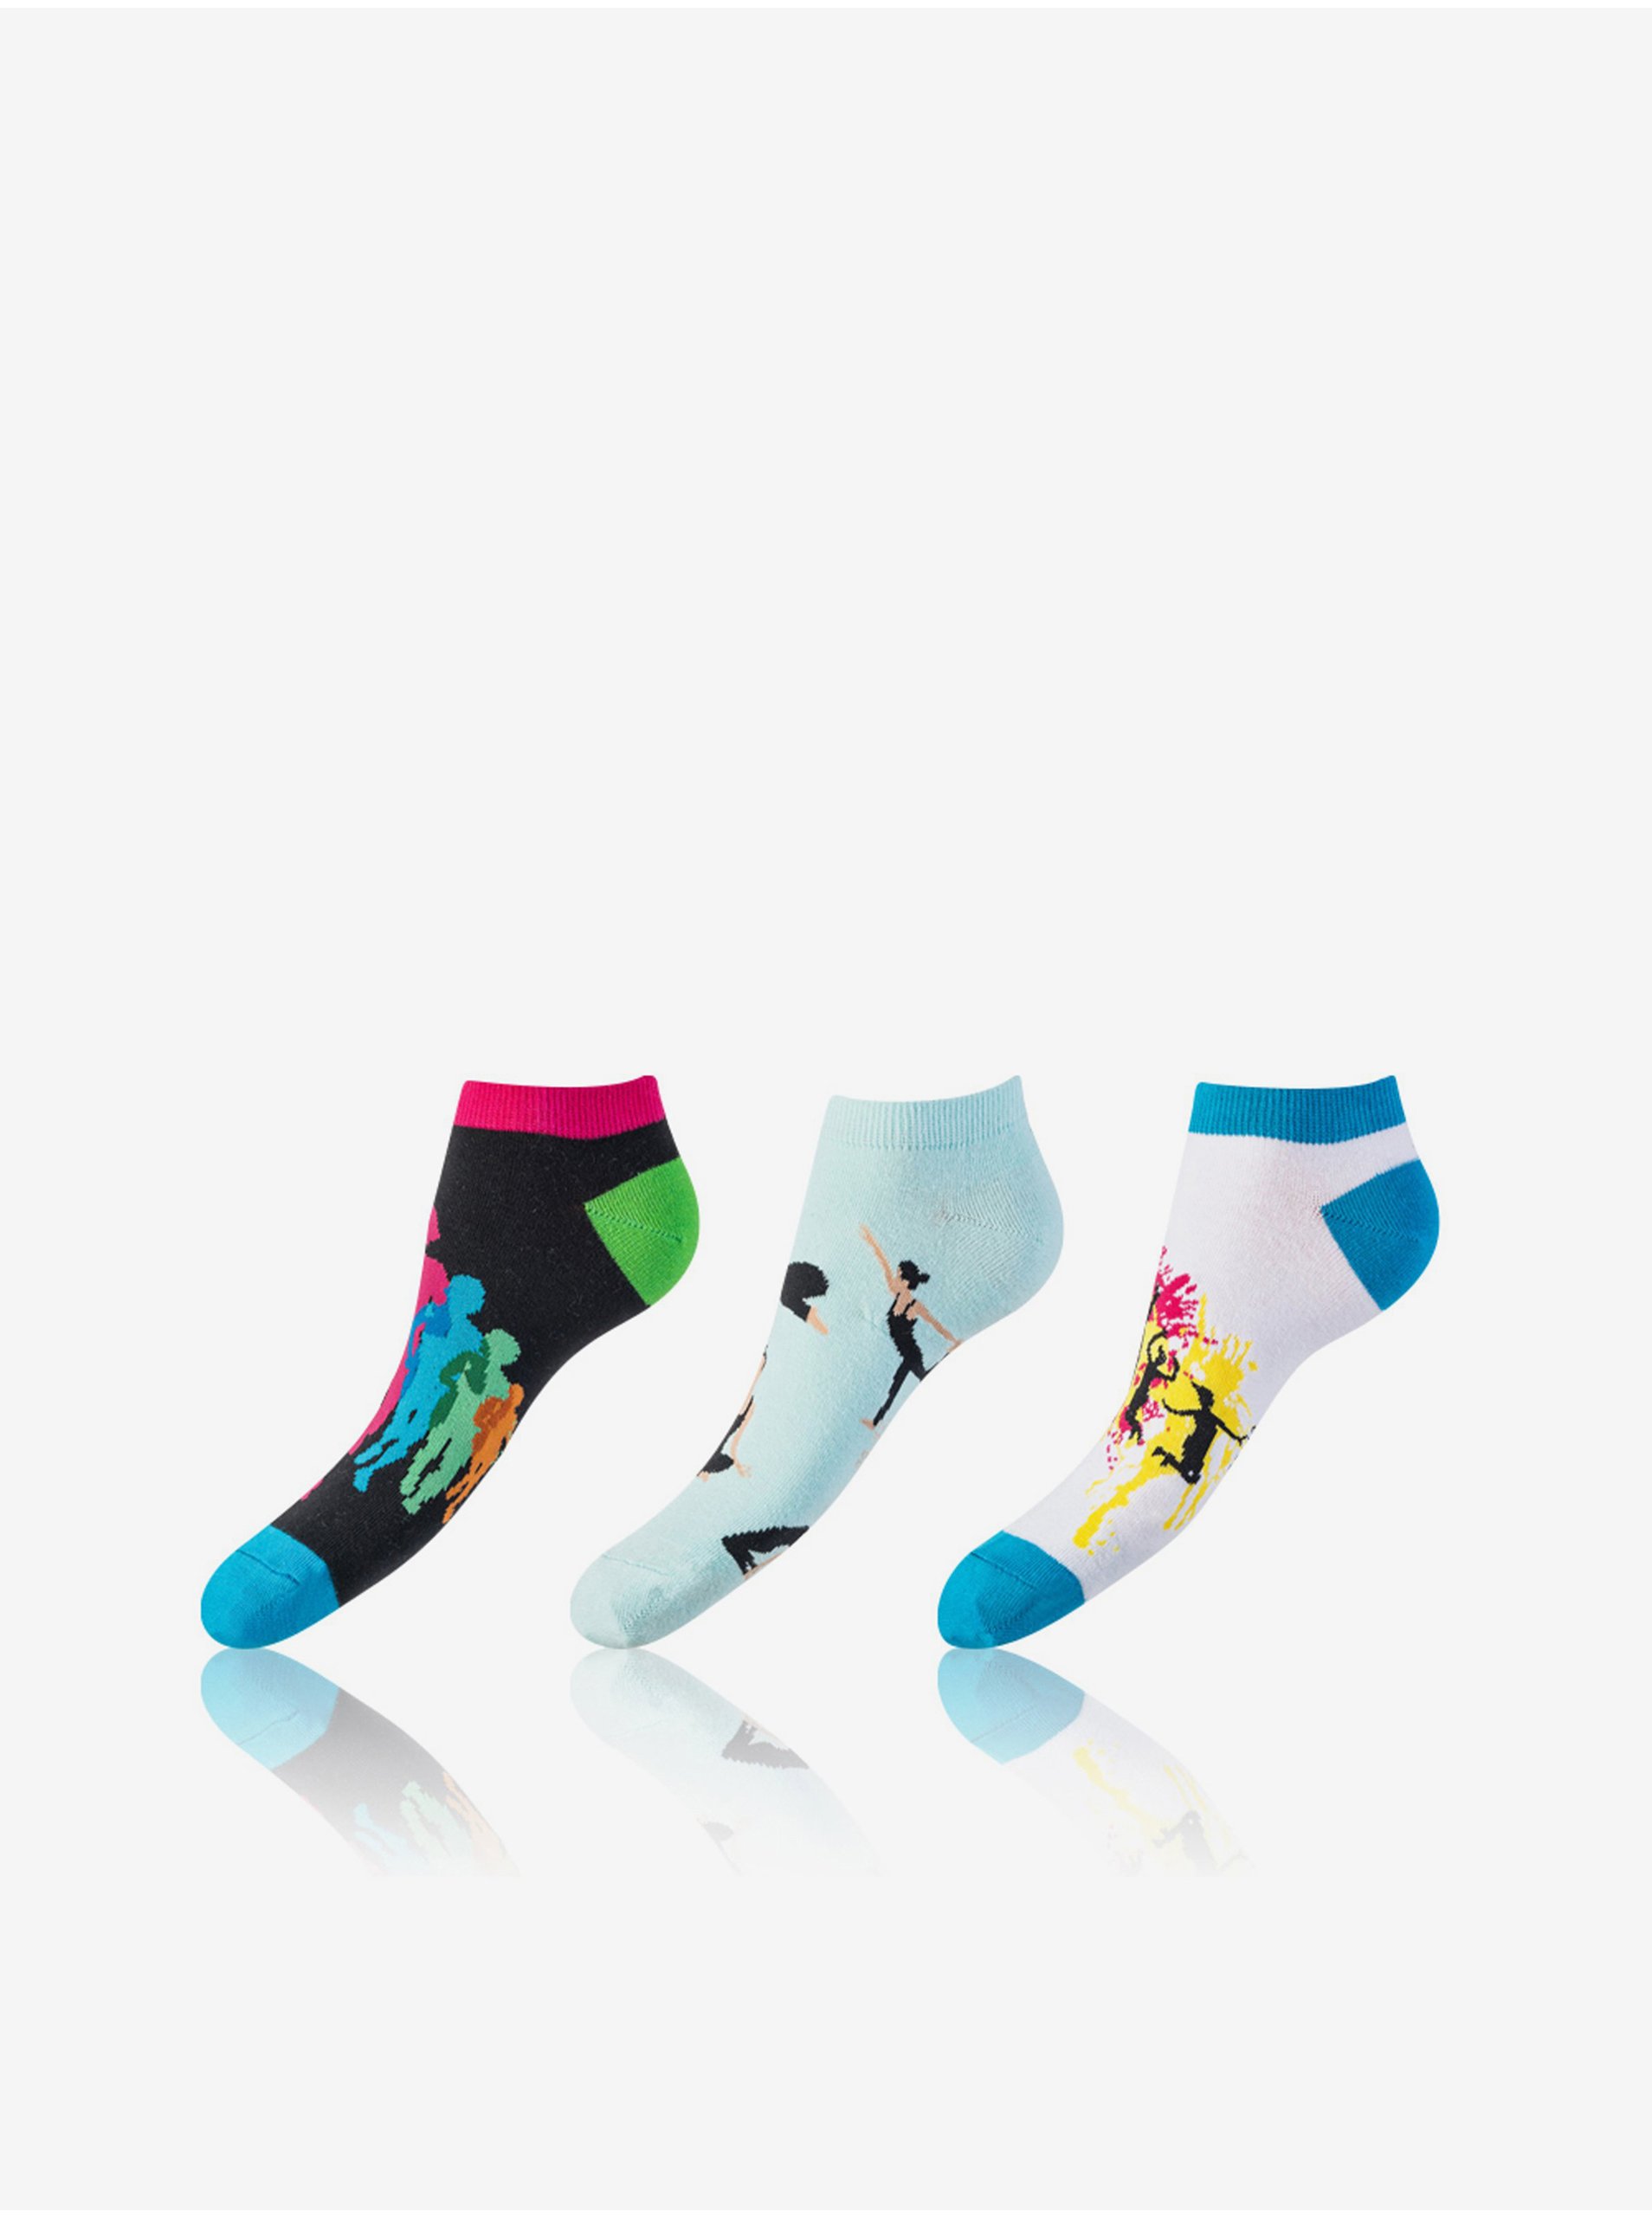 E-shop Sada tří párů unisex ponožek v černé, bílé a světle modré barvě Bellinda CRAZY IN-SHOE SOCKS 3x